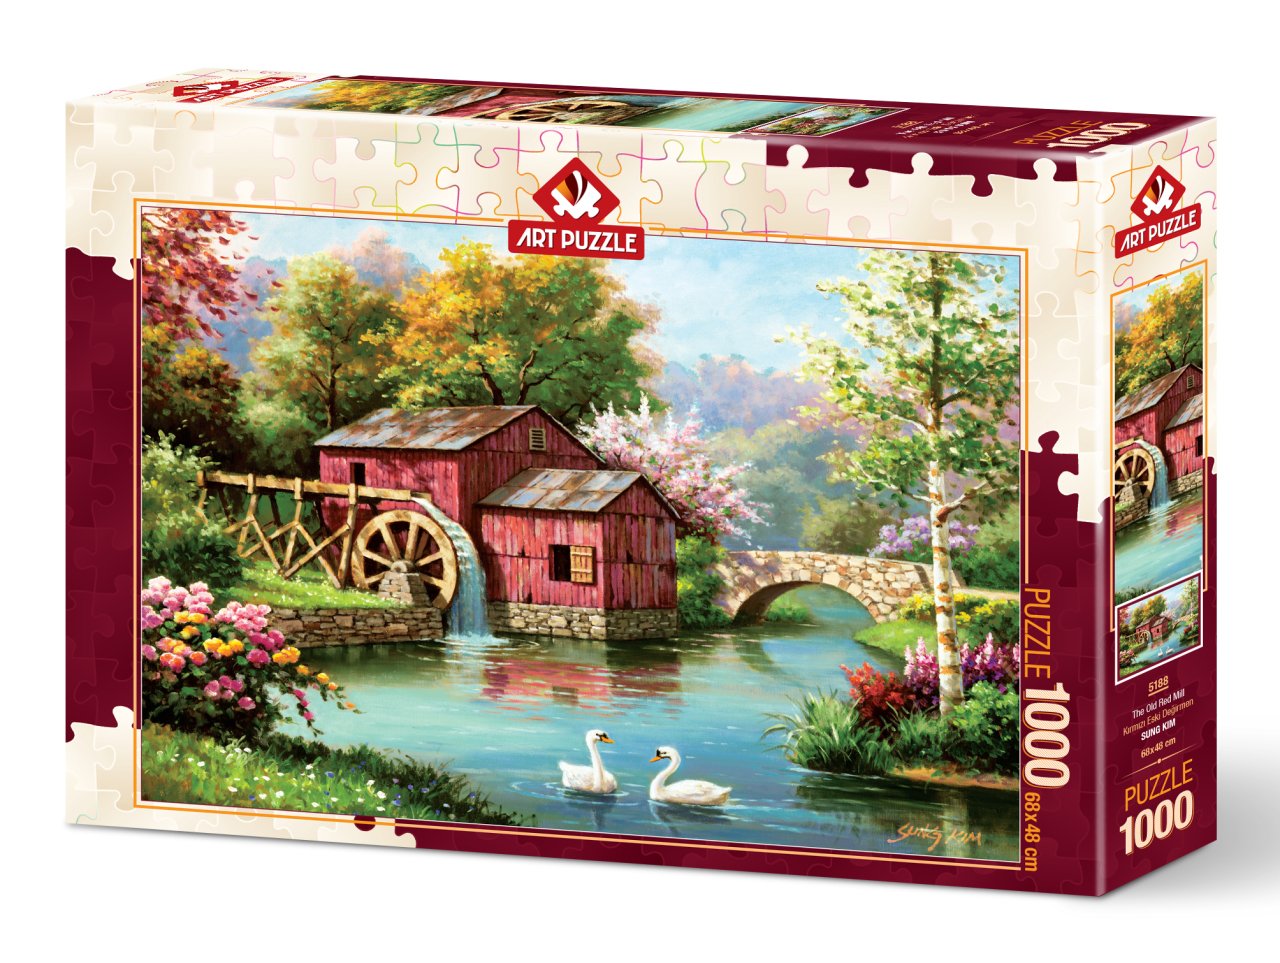 Art Puzzle Rote Alte Mühle 1000 Teile Puzzle